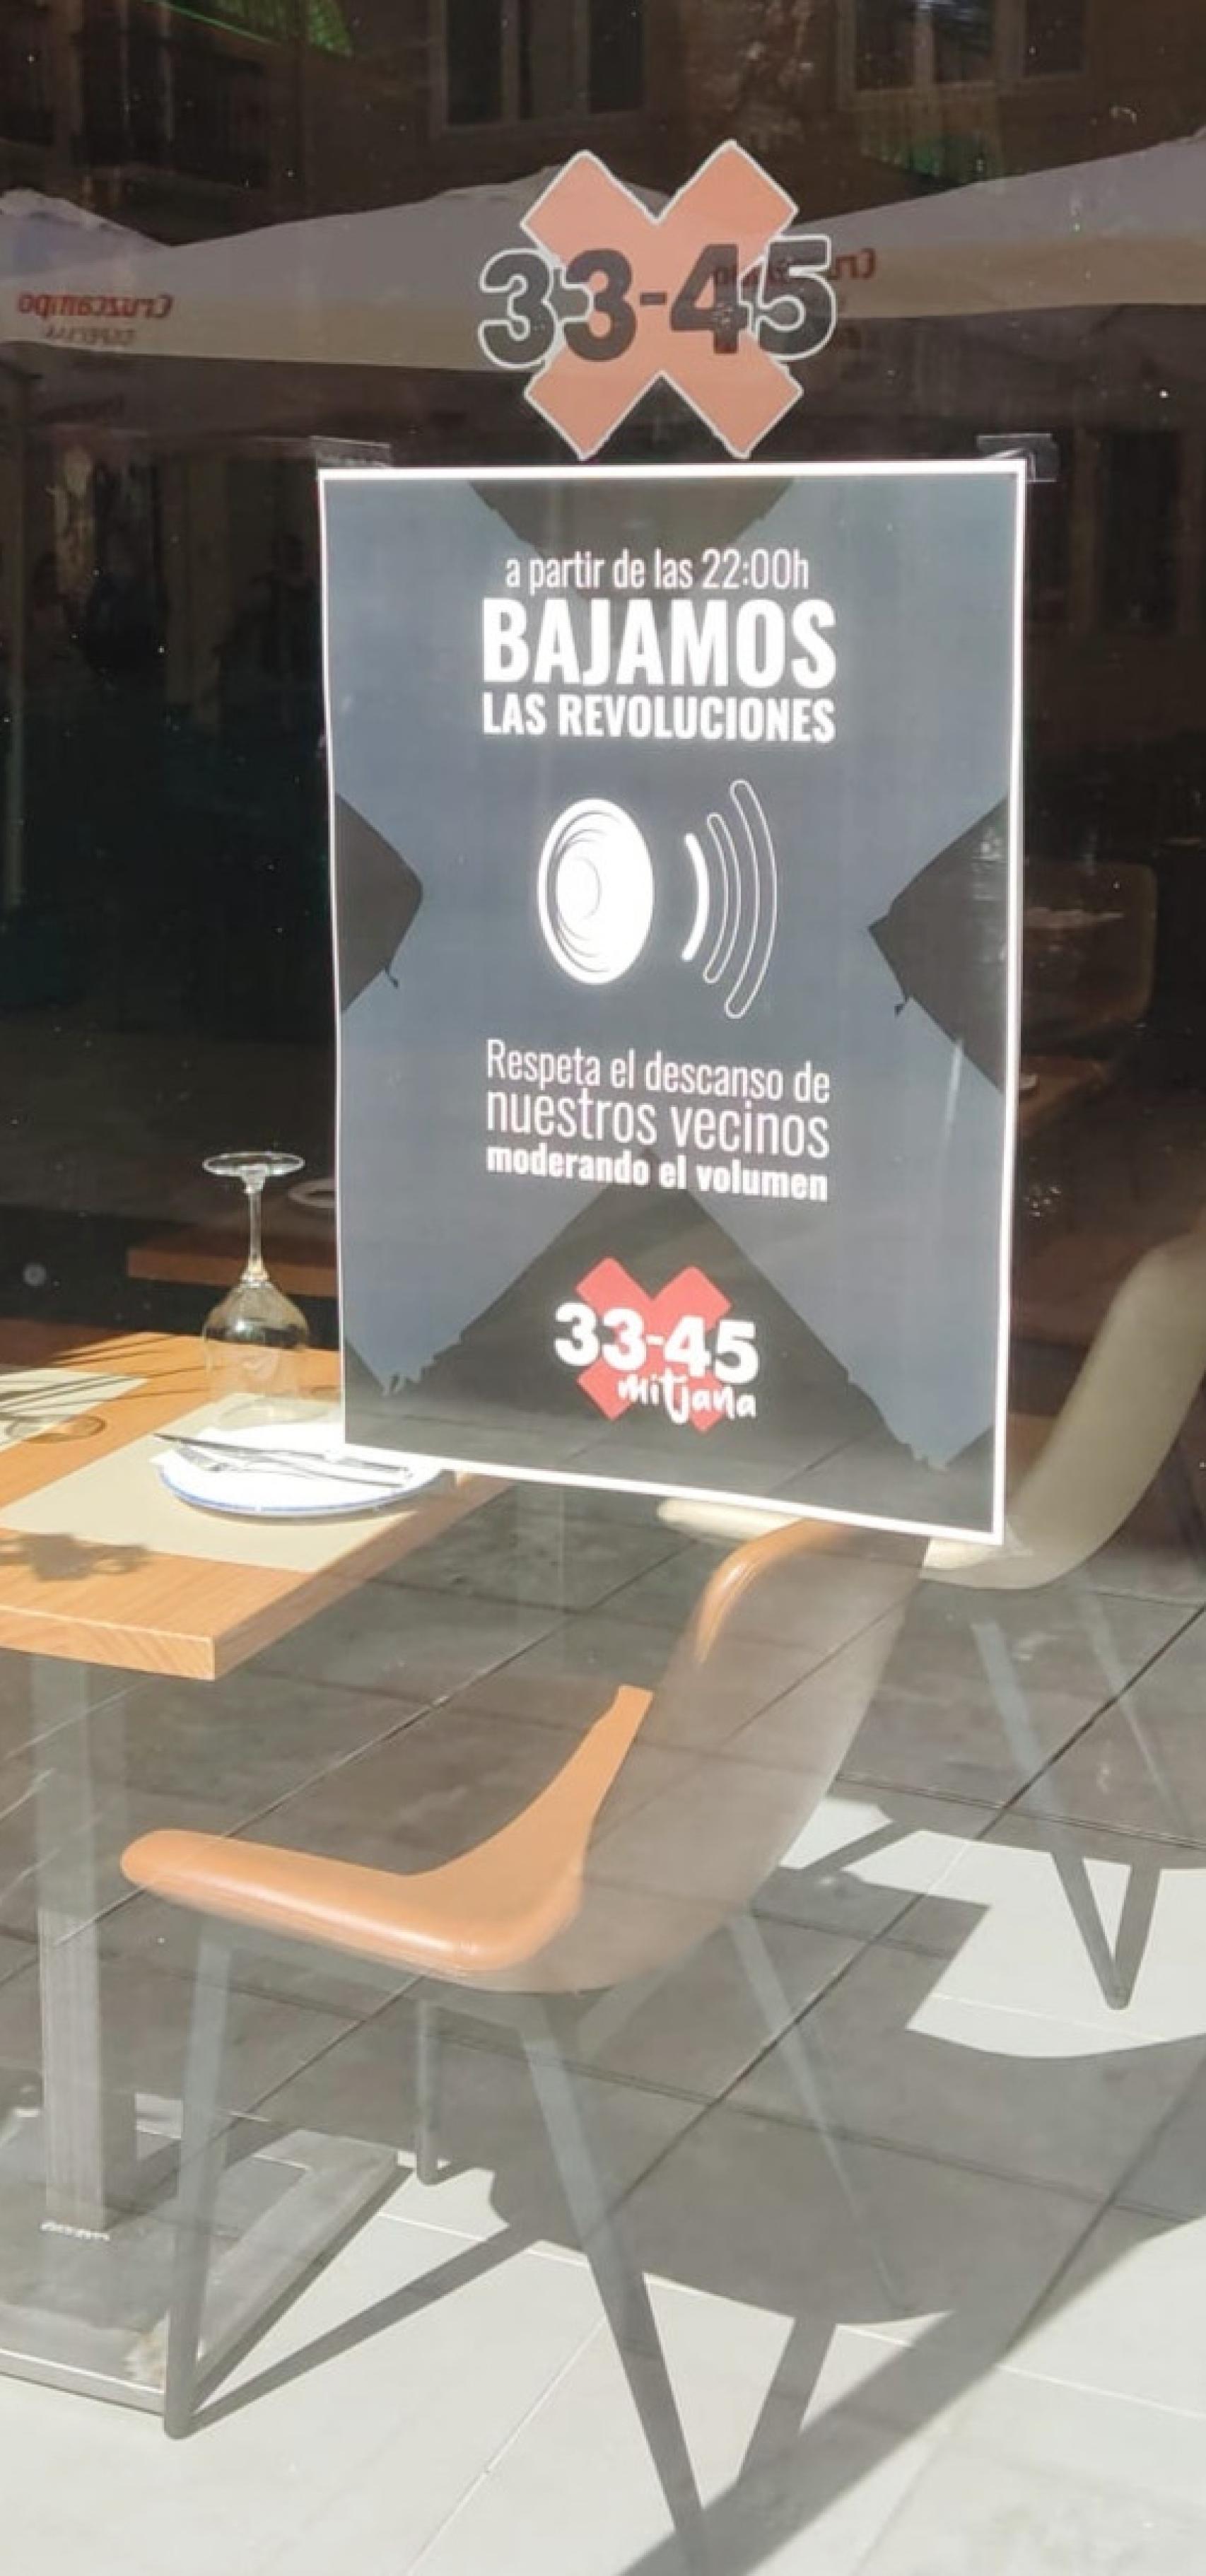 Imagen de uno de los carteles colocados por el restaurante de la Plaza Mitjana, en el Centro de Málaga.